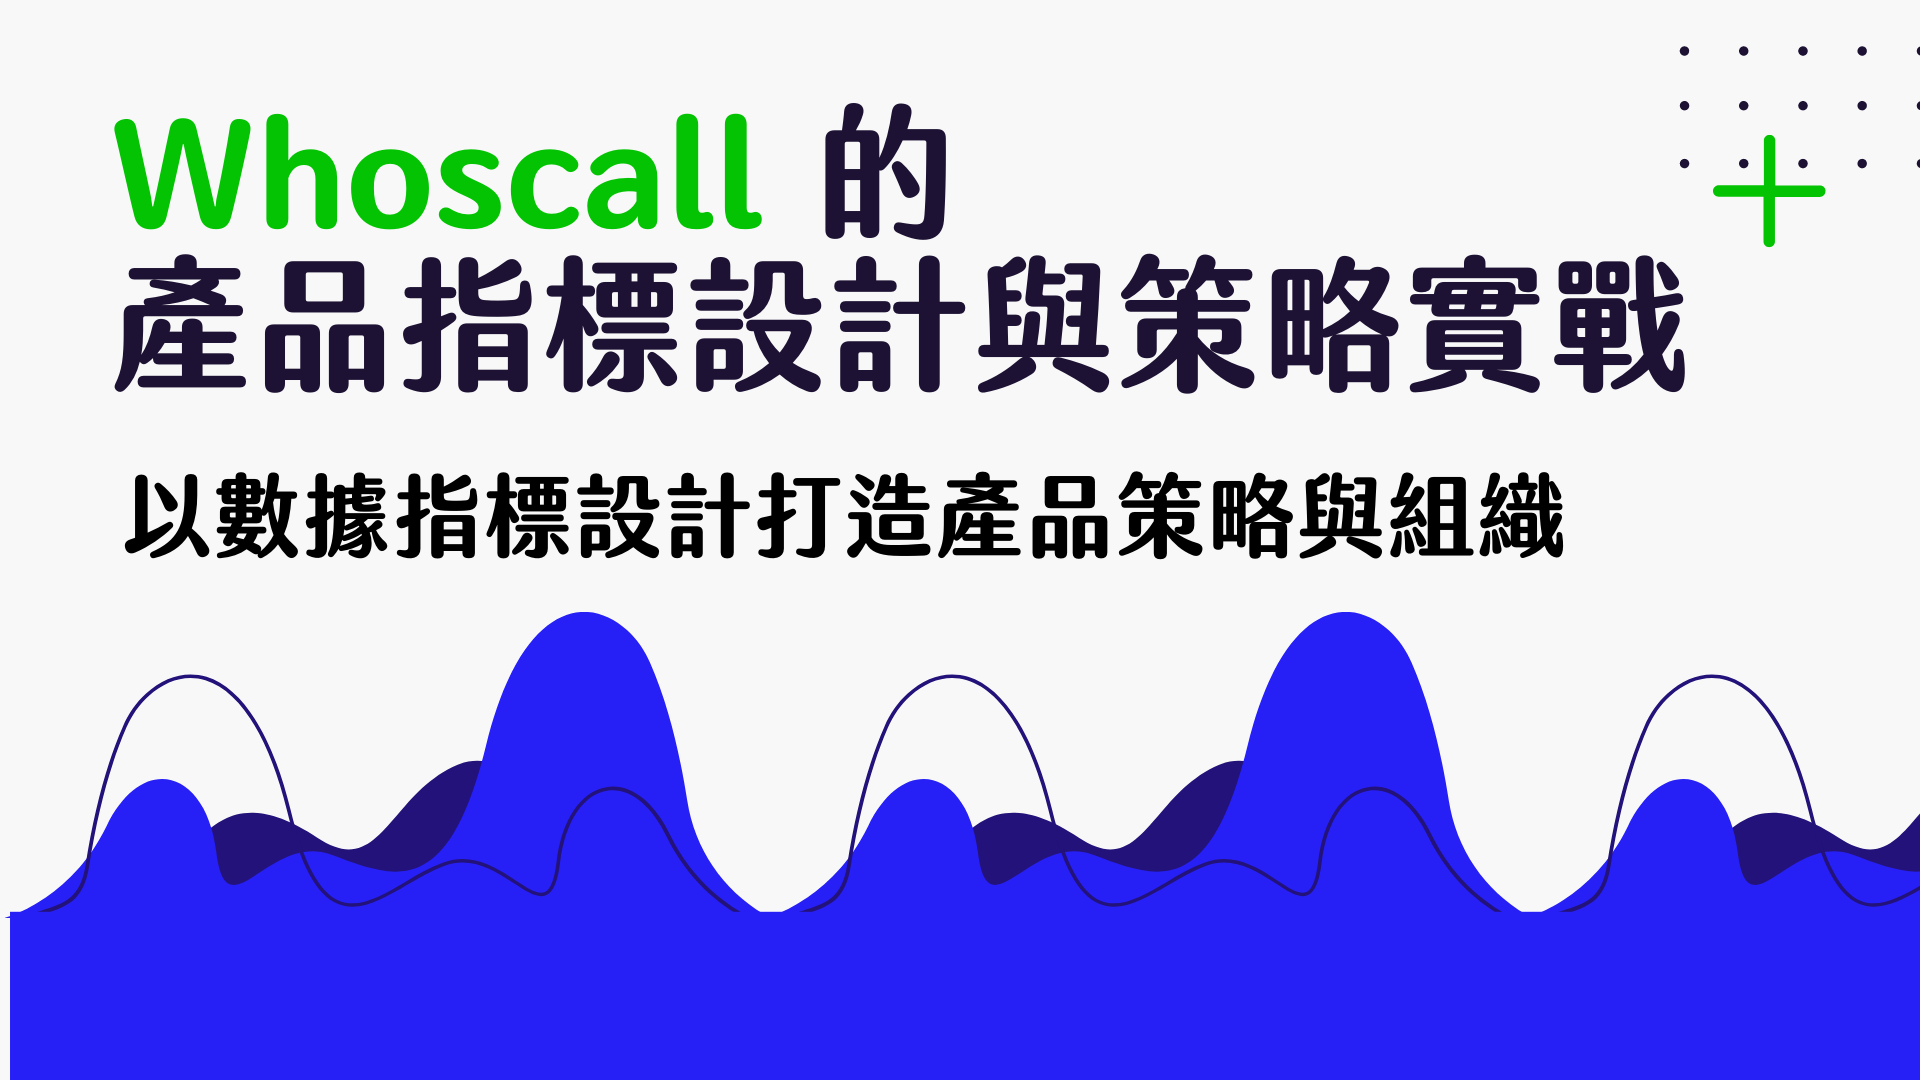 【產品】Whoscall 的產品指標設計與策略實戰課程封面